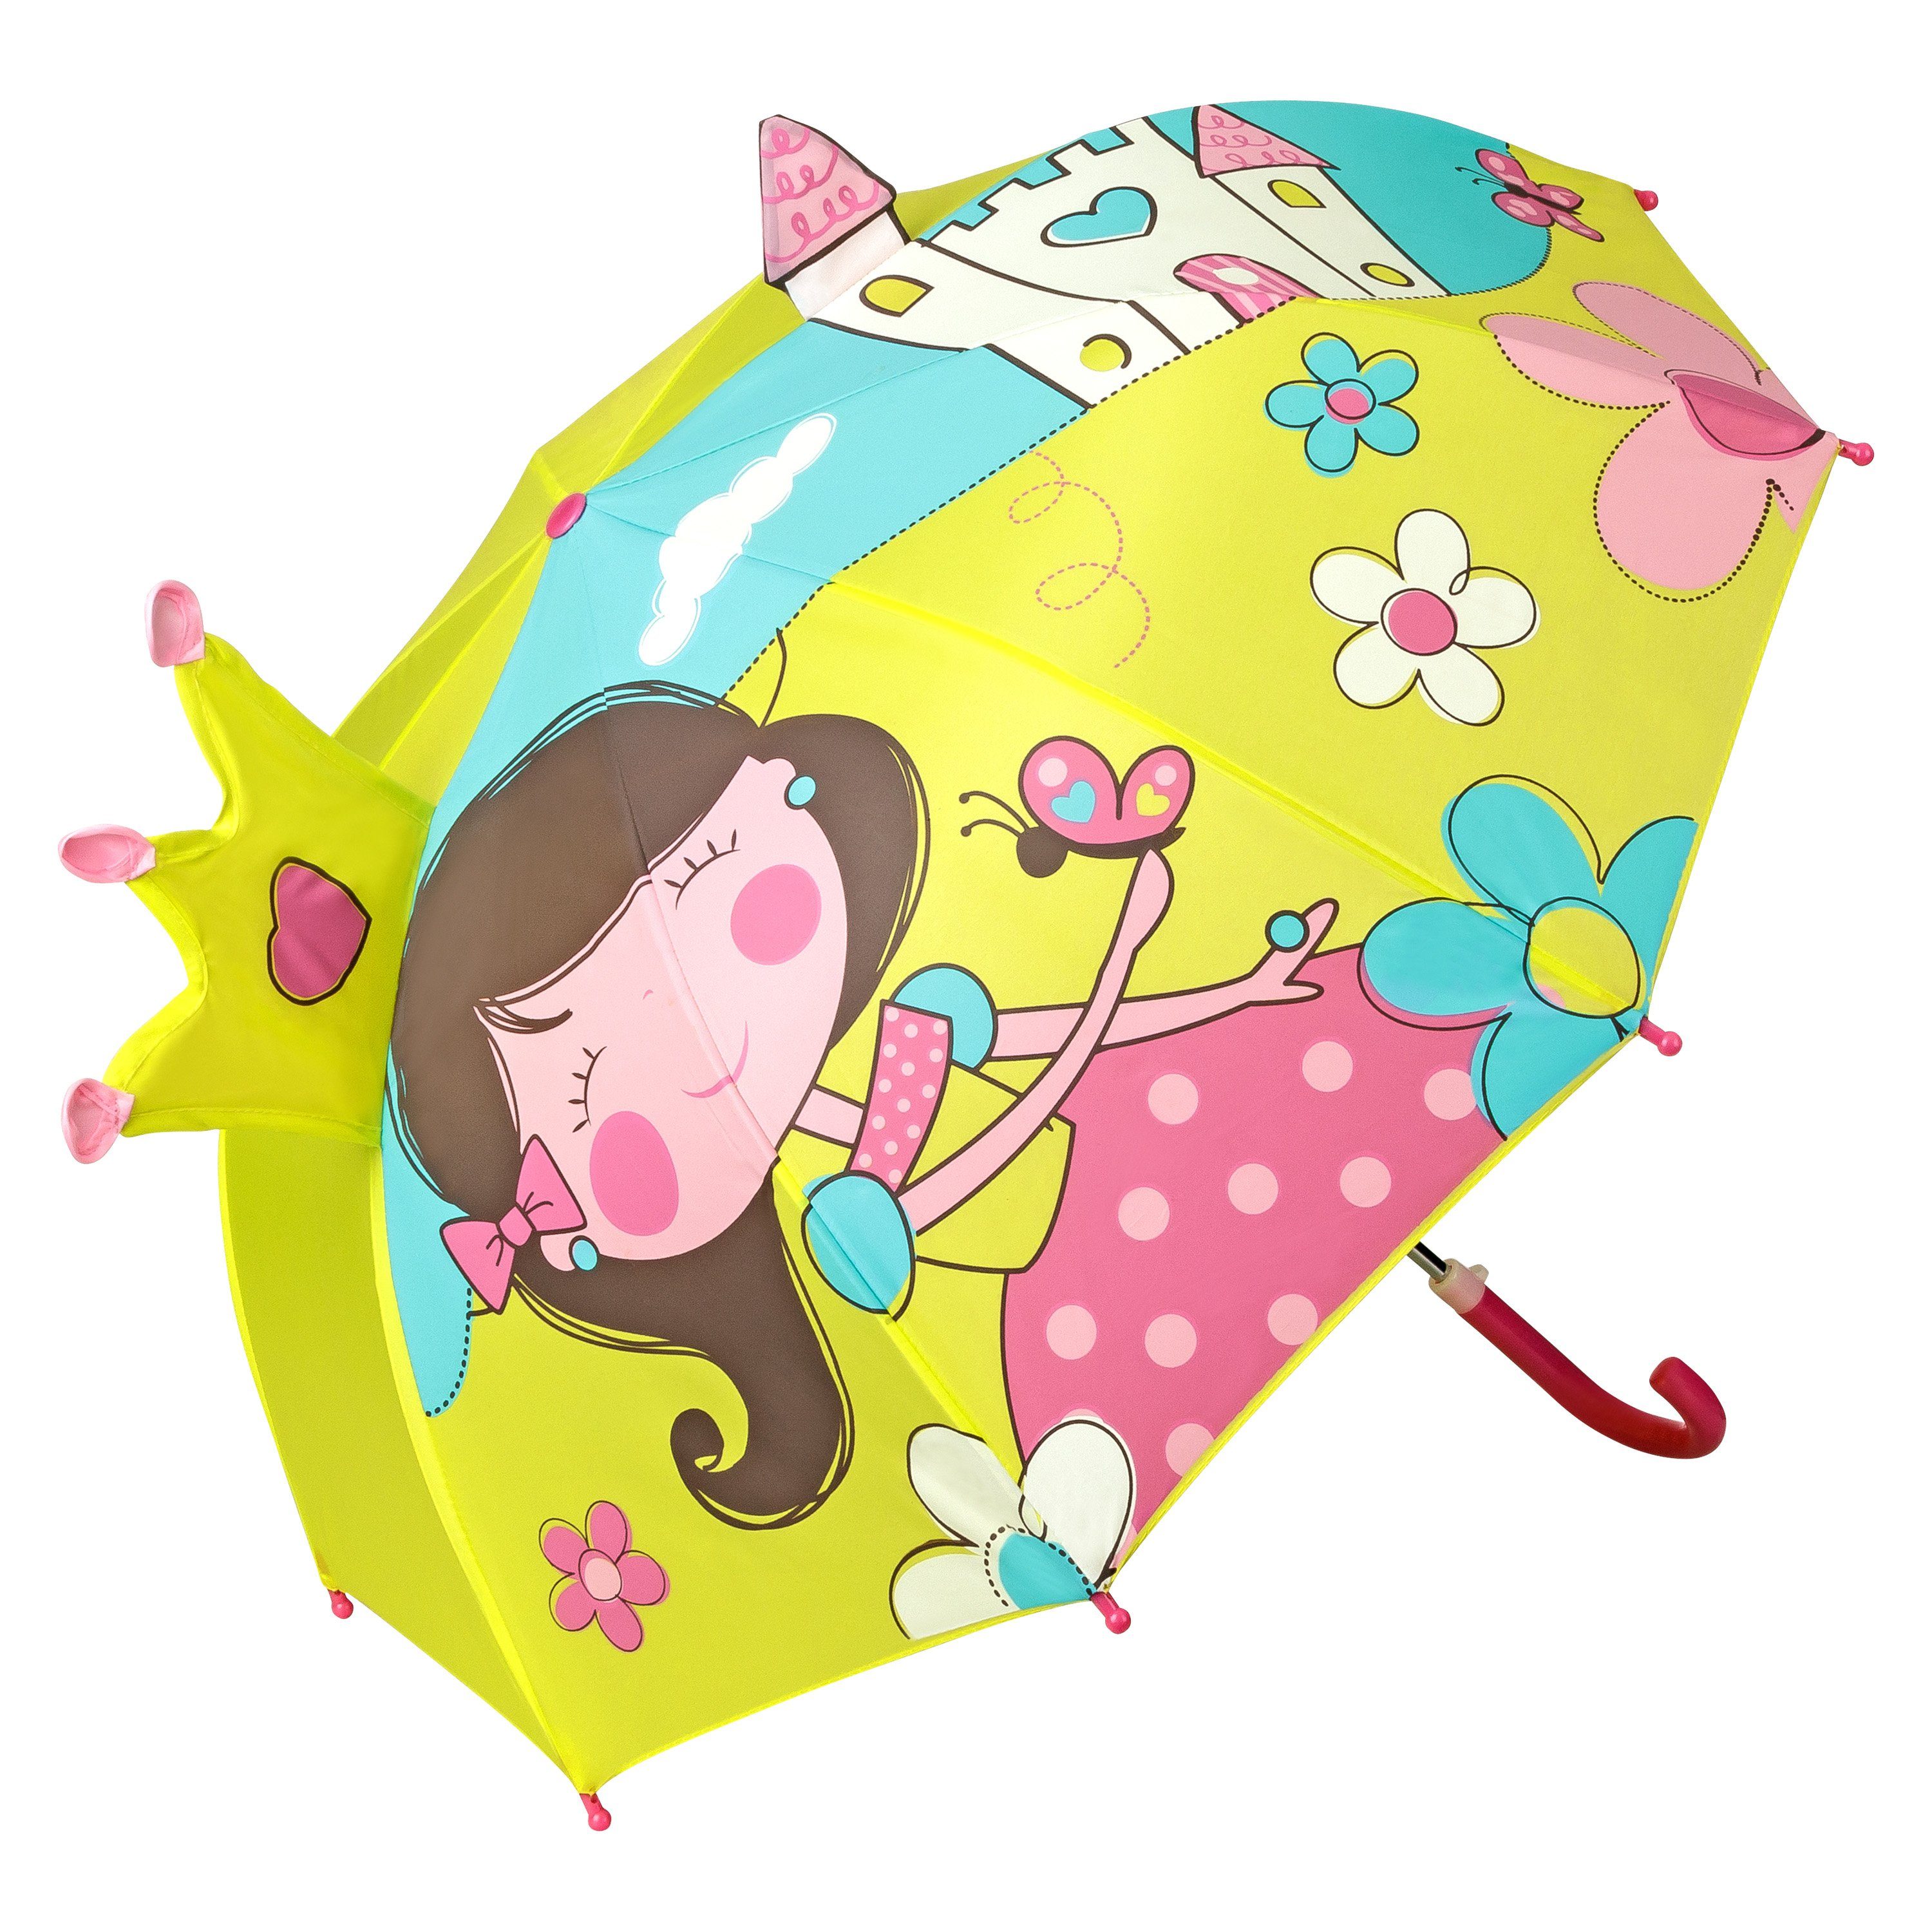 Spielzeug Kinder-Regenschirme von Lilienfeld Stockregenschirm VON LILIENFELD Regenschirm Prinzessin mit Schloß Kind Kinderschirm